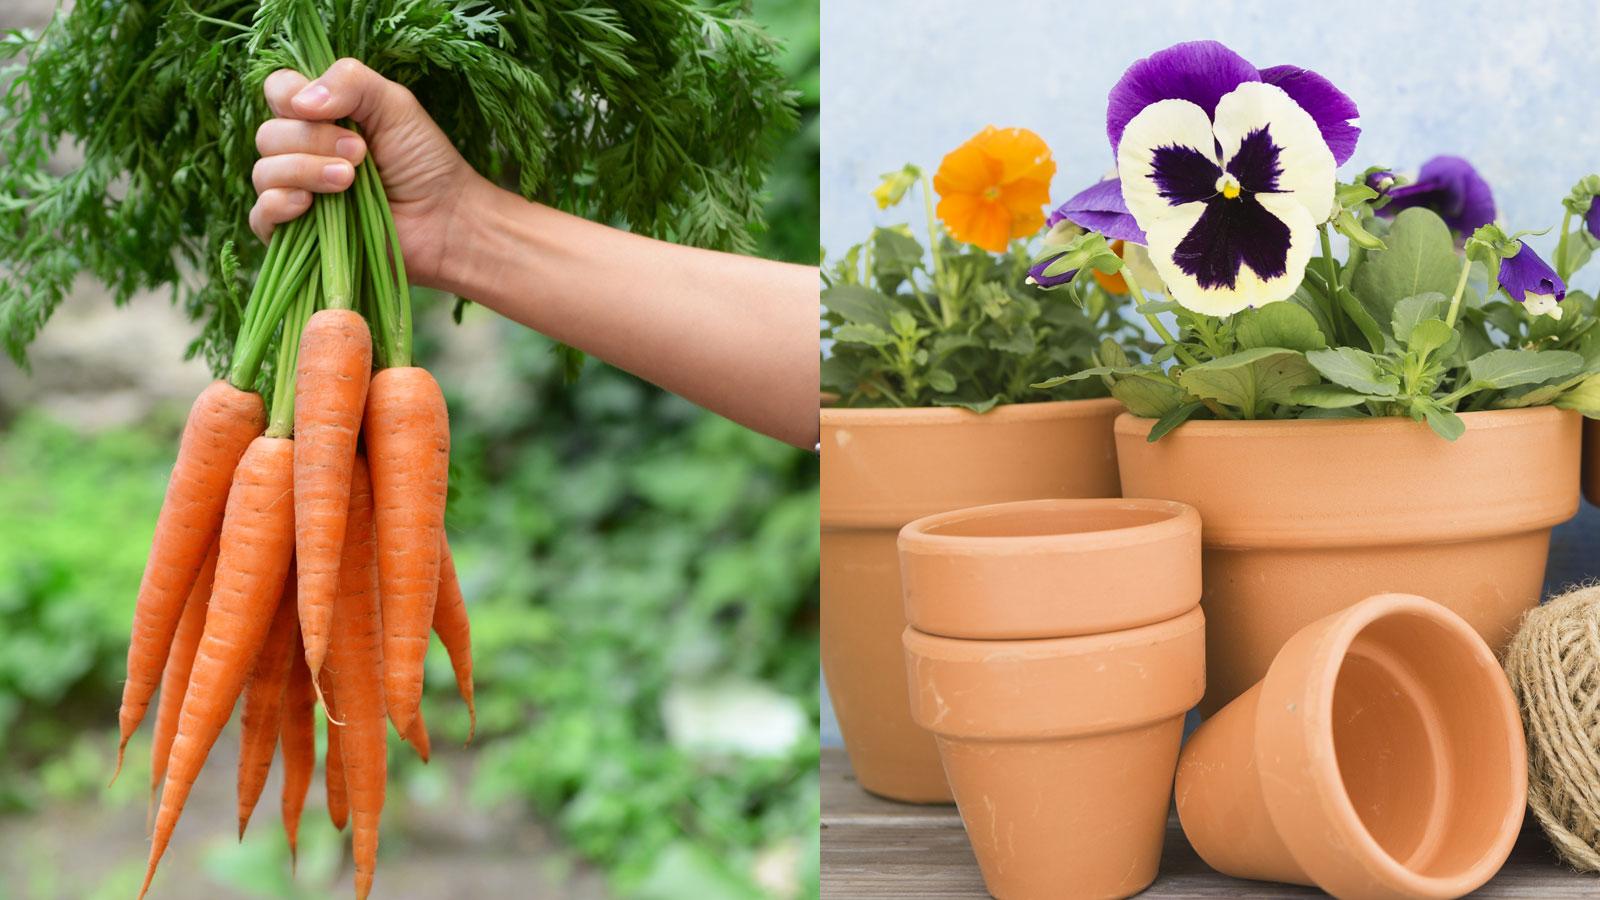 χυμός καρότου στα φυτά,για τον κήπο,συμβουλές κηπουρικής,χρήσιμα,